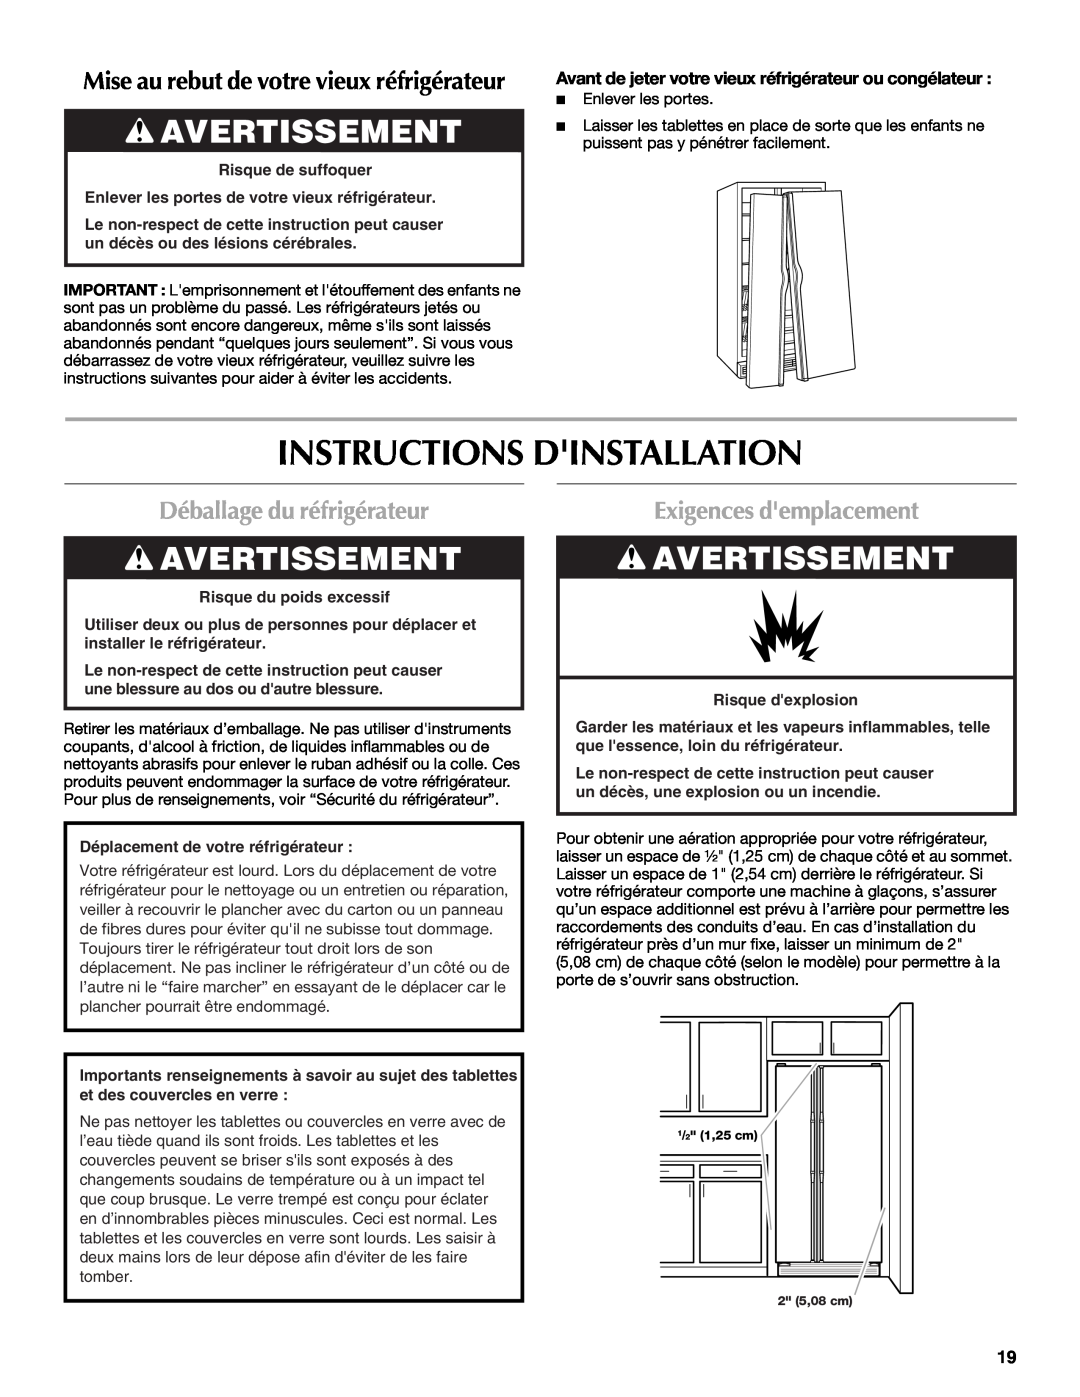 Maytag W10321476A Instructions Dinstallation, Avertissement, Déballage du réfrigérateur, Exigences demplacement 